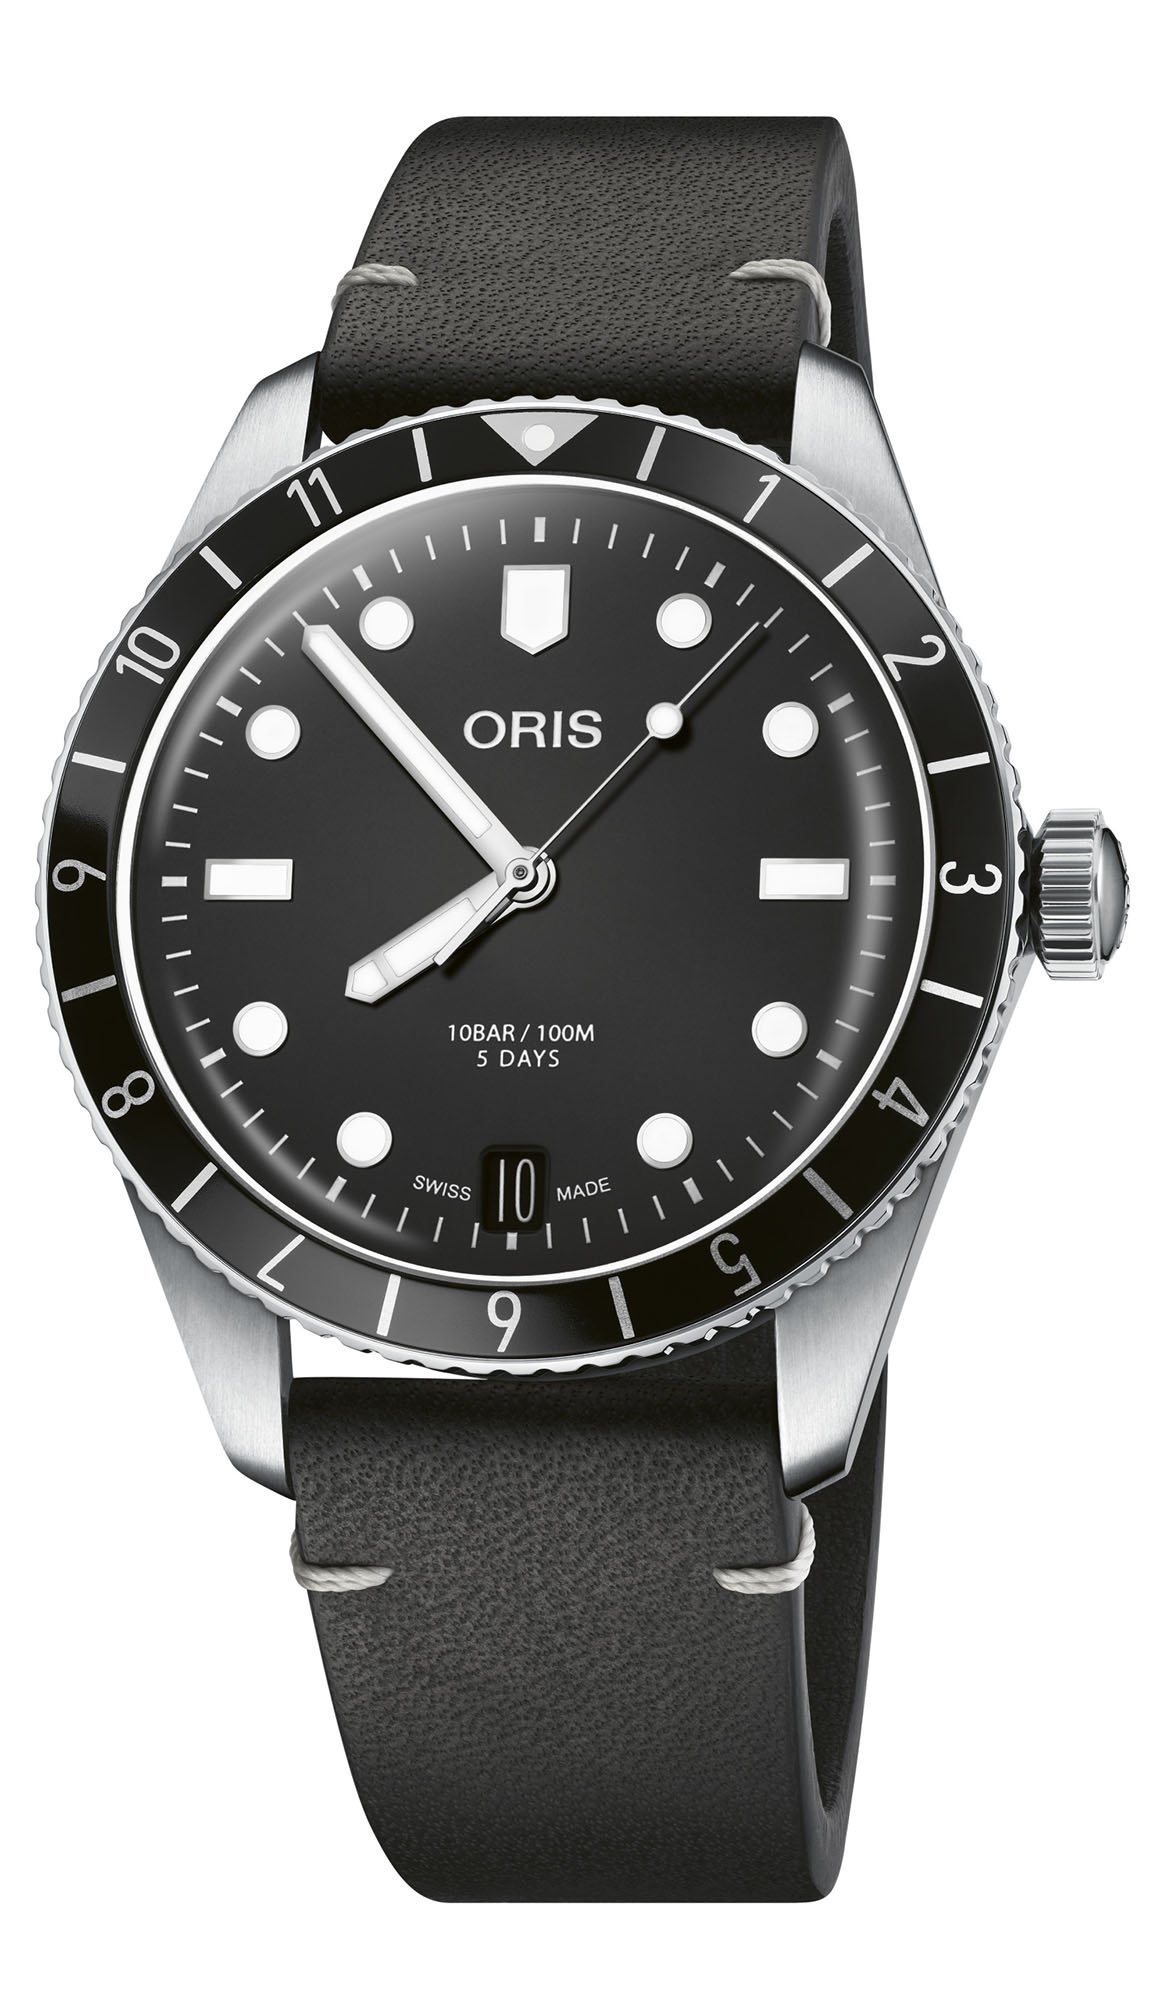 Oris представляет серийные часы Divers Sixty-Five 12H Calibre 400